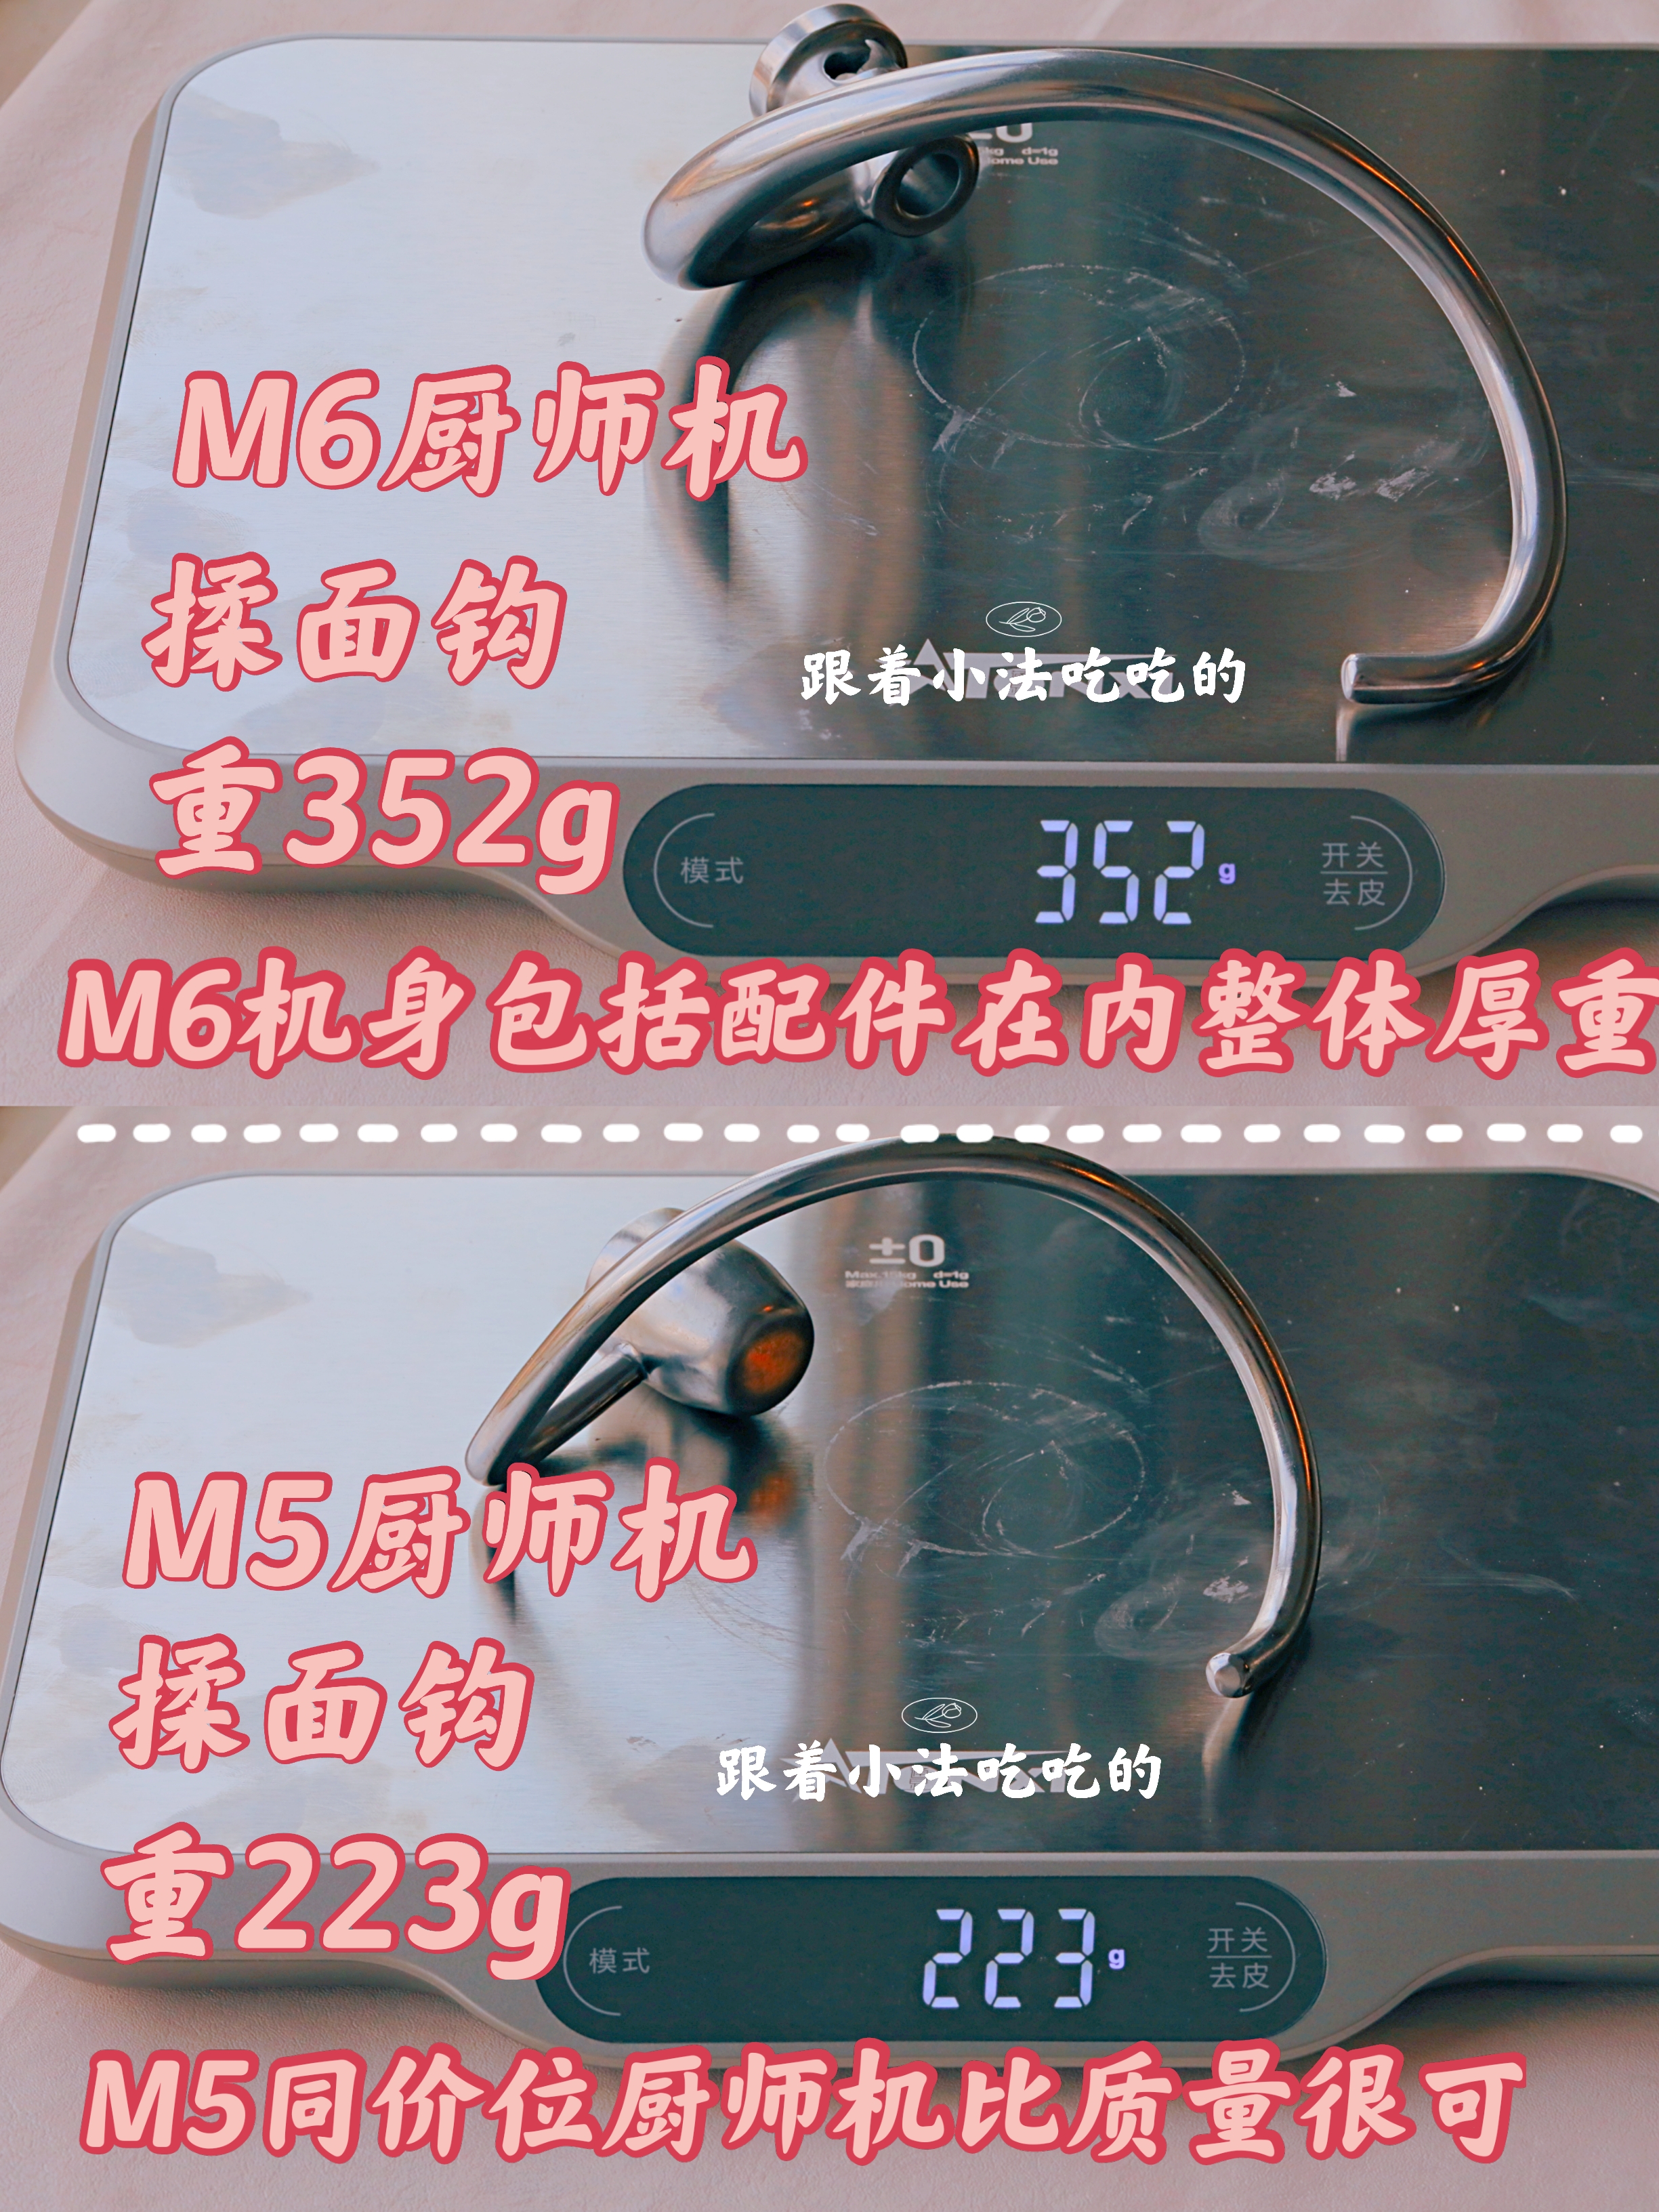 厨师机对比测评 |M5厨师机和M6厨师机超详细区别